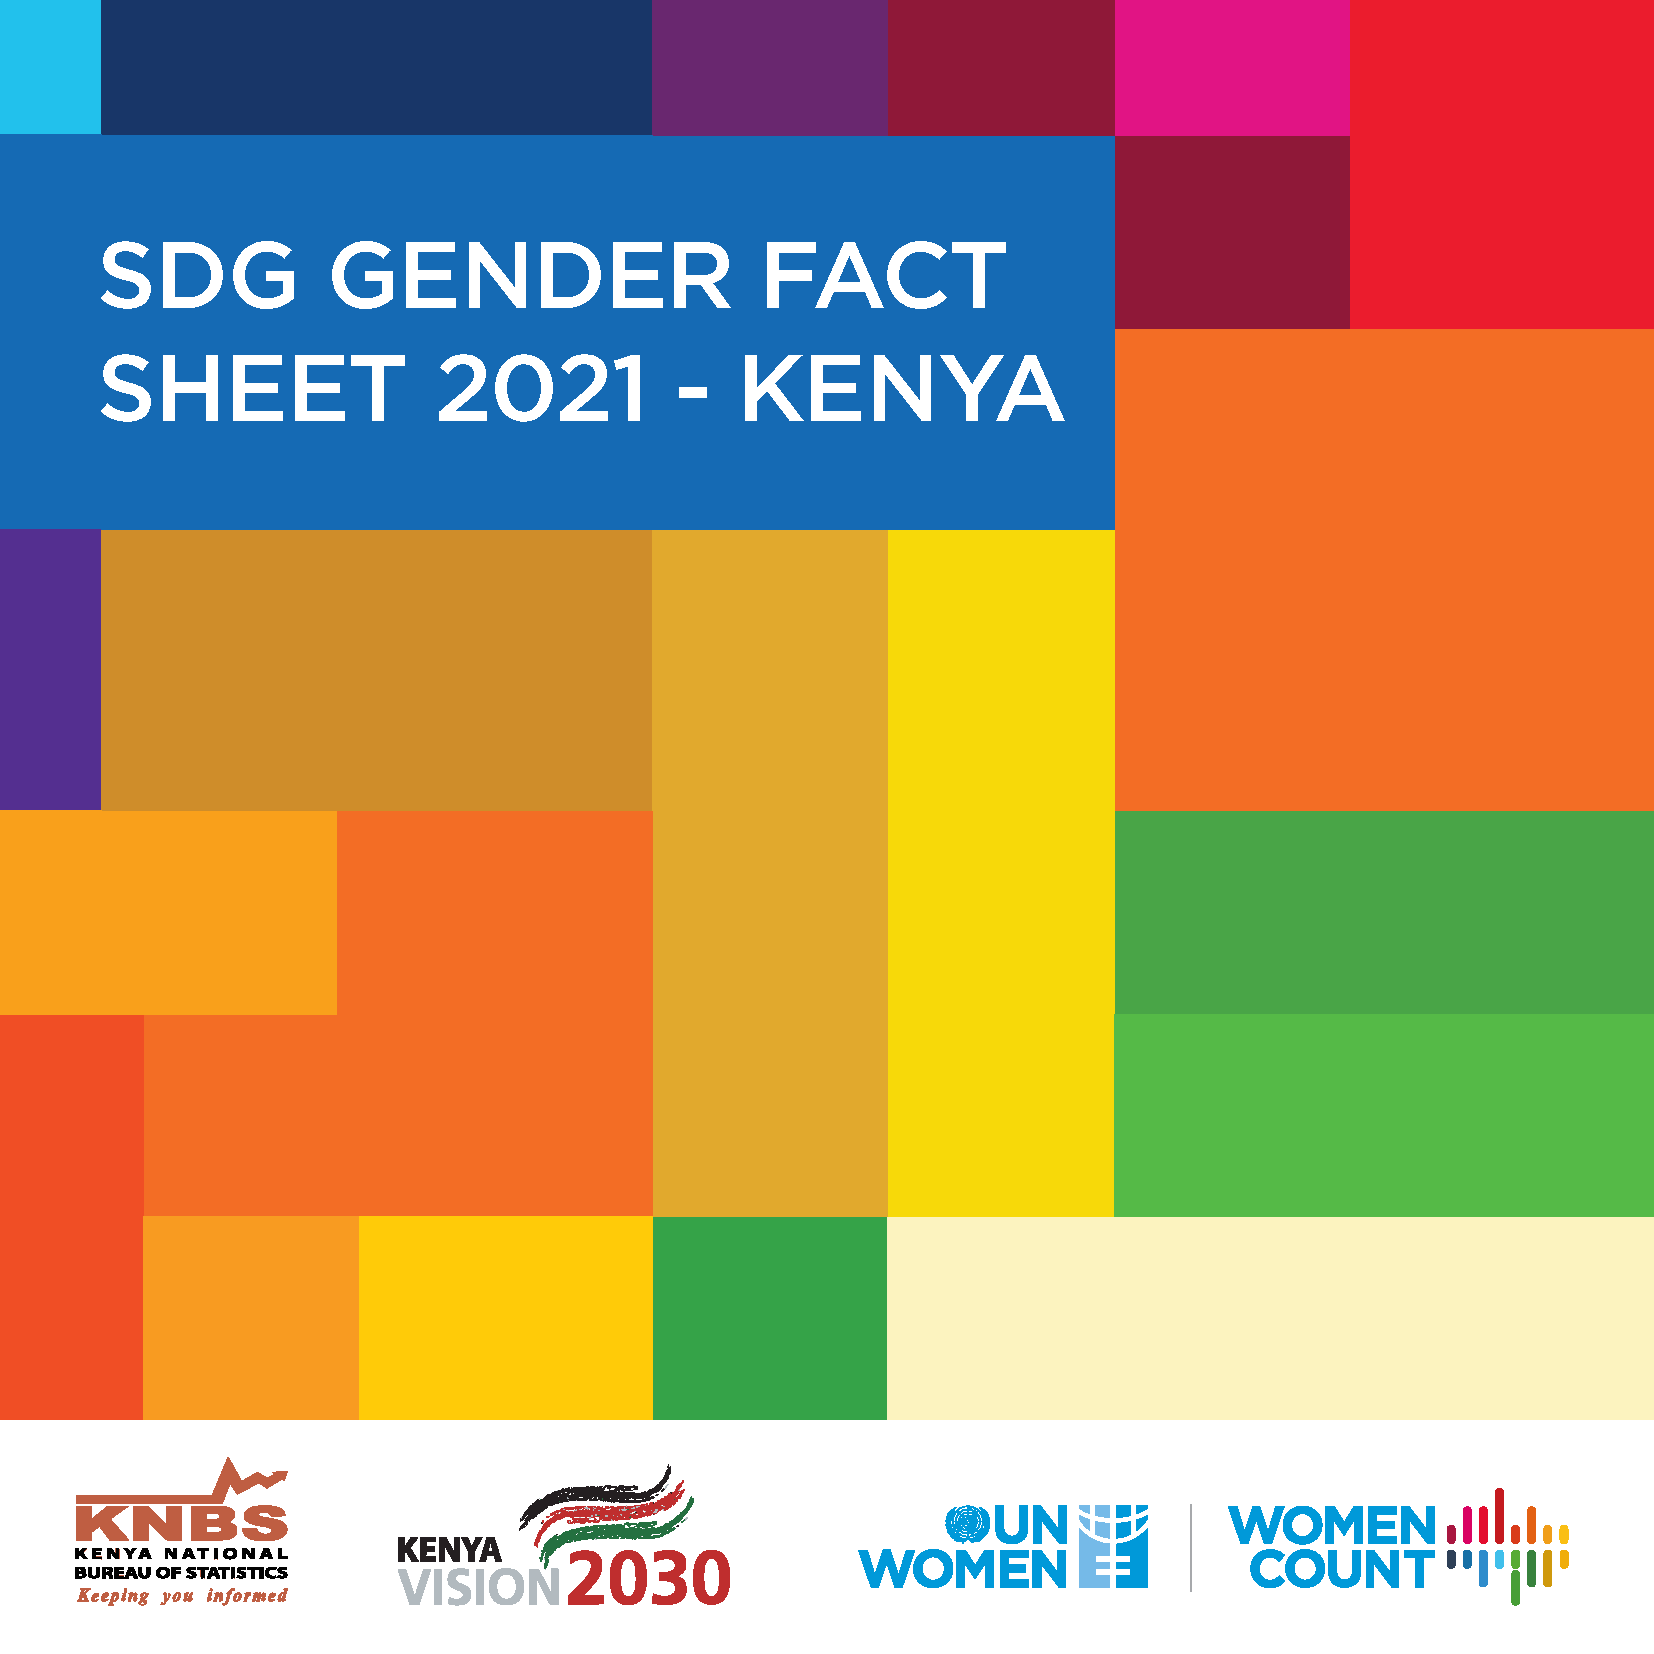 Kenya SDG gender fact sheet